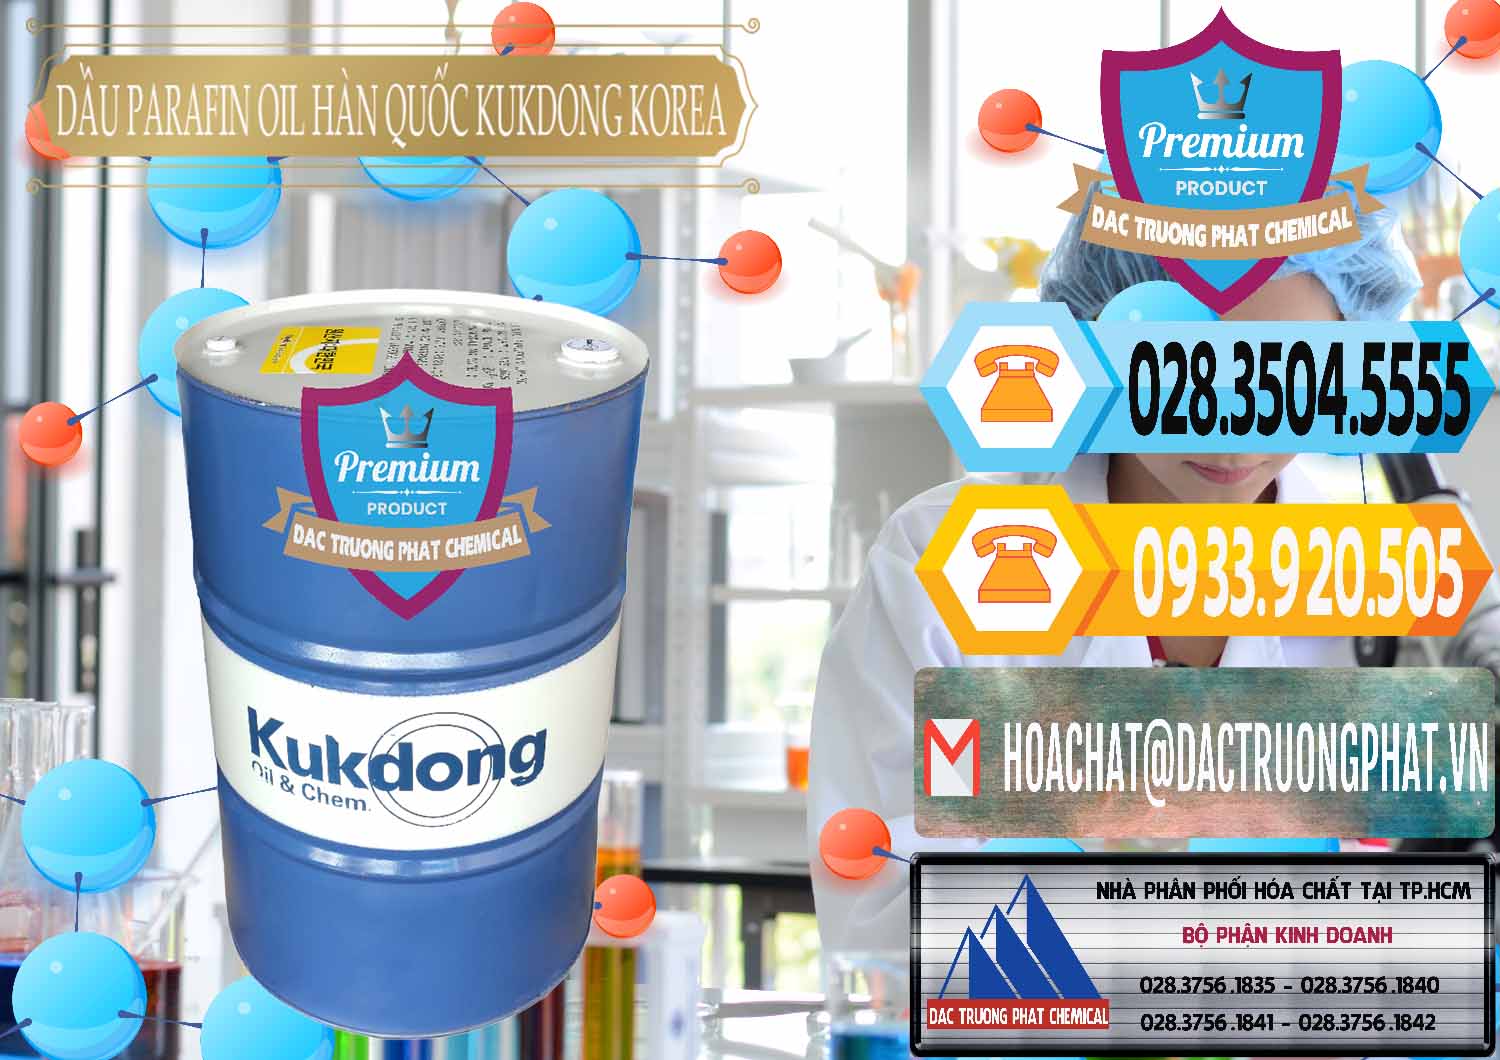 Chuyên phân phối & bán Dầu Parafin Oil Hàn Quốc Korea Kukdong - 0060 - Chuyên kinh doanh ( cung cấp ) hóa chất tại TP.HCM - hoachattayrua.net